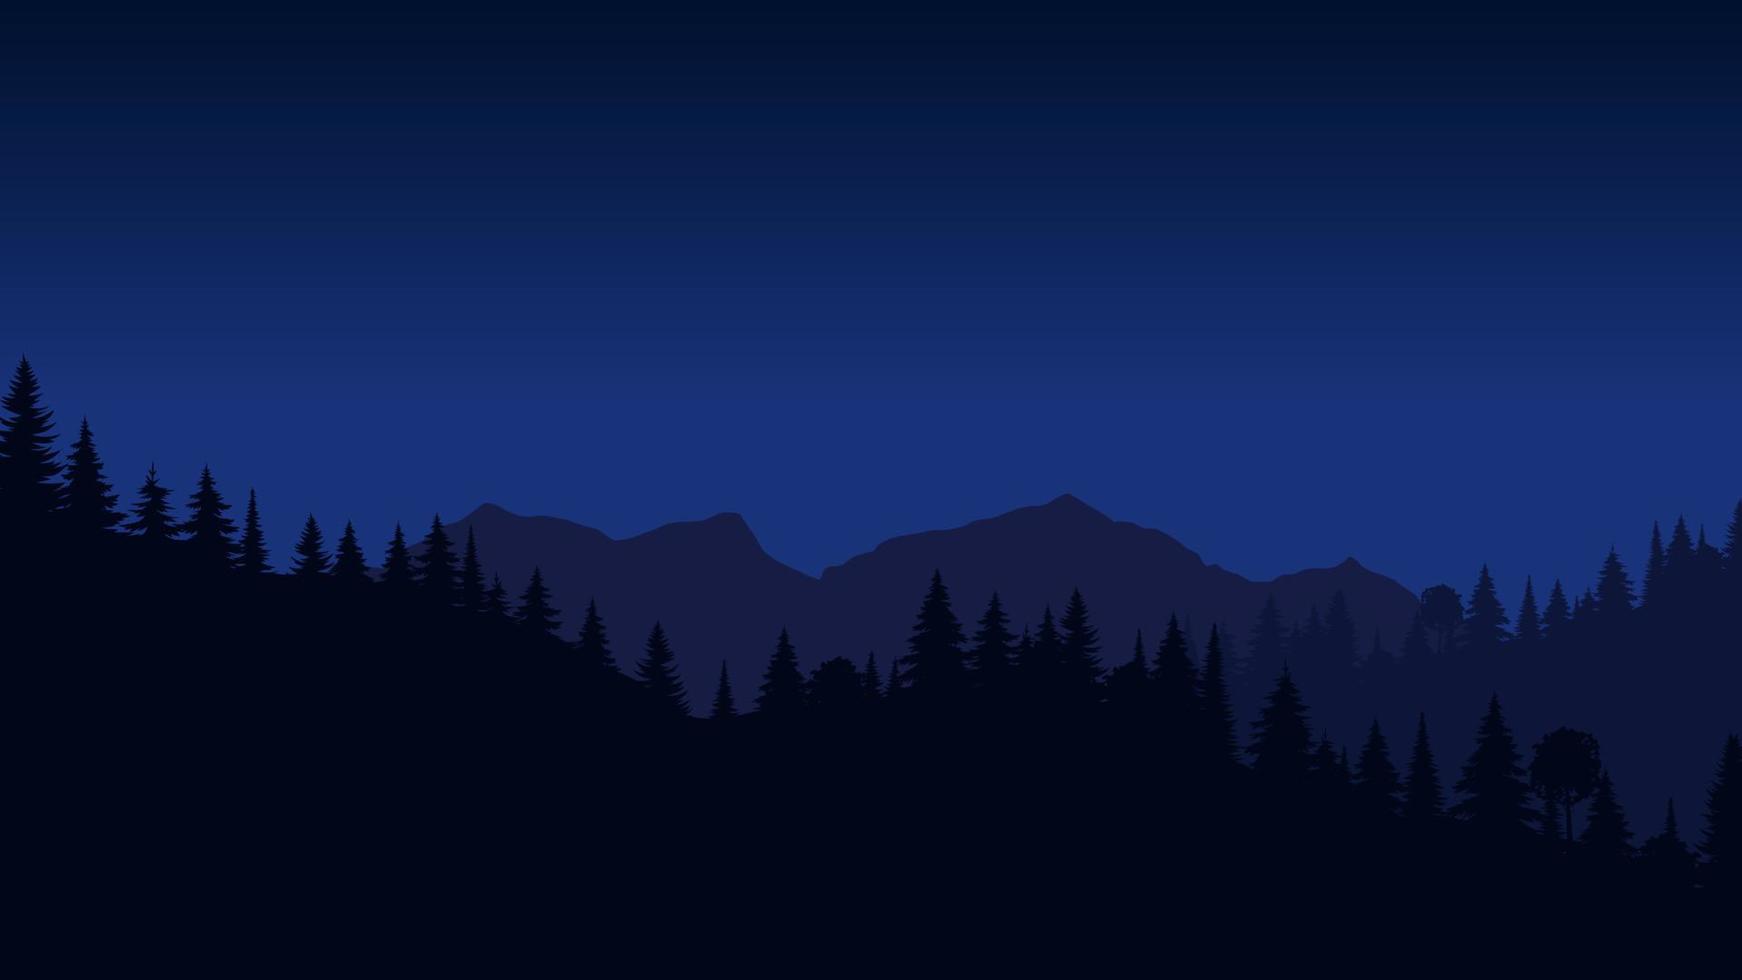 paysage de silhouette avec brouillard, forêt, pins, montagnes. illustration de la vue nocturne, brume. bleu marine. bon pour le papier peint, l'arrière-plan, la bannière Web, la couverture, l'affiche. vecteur